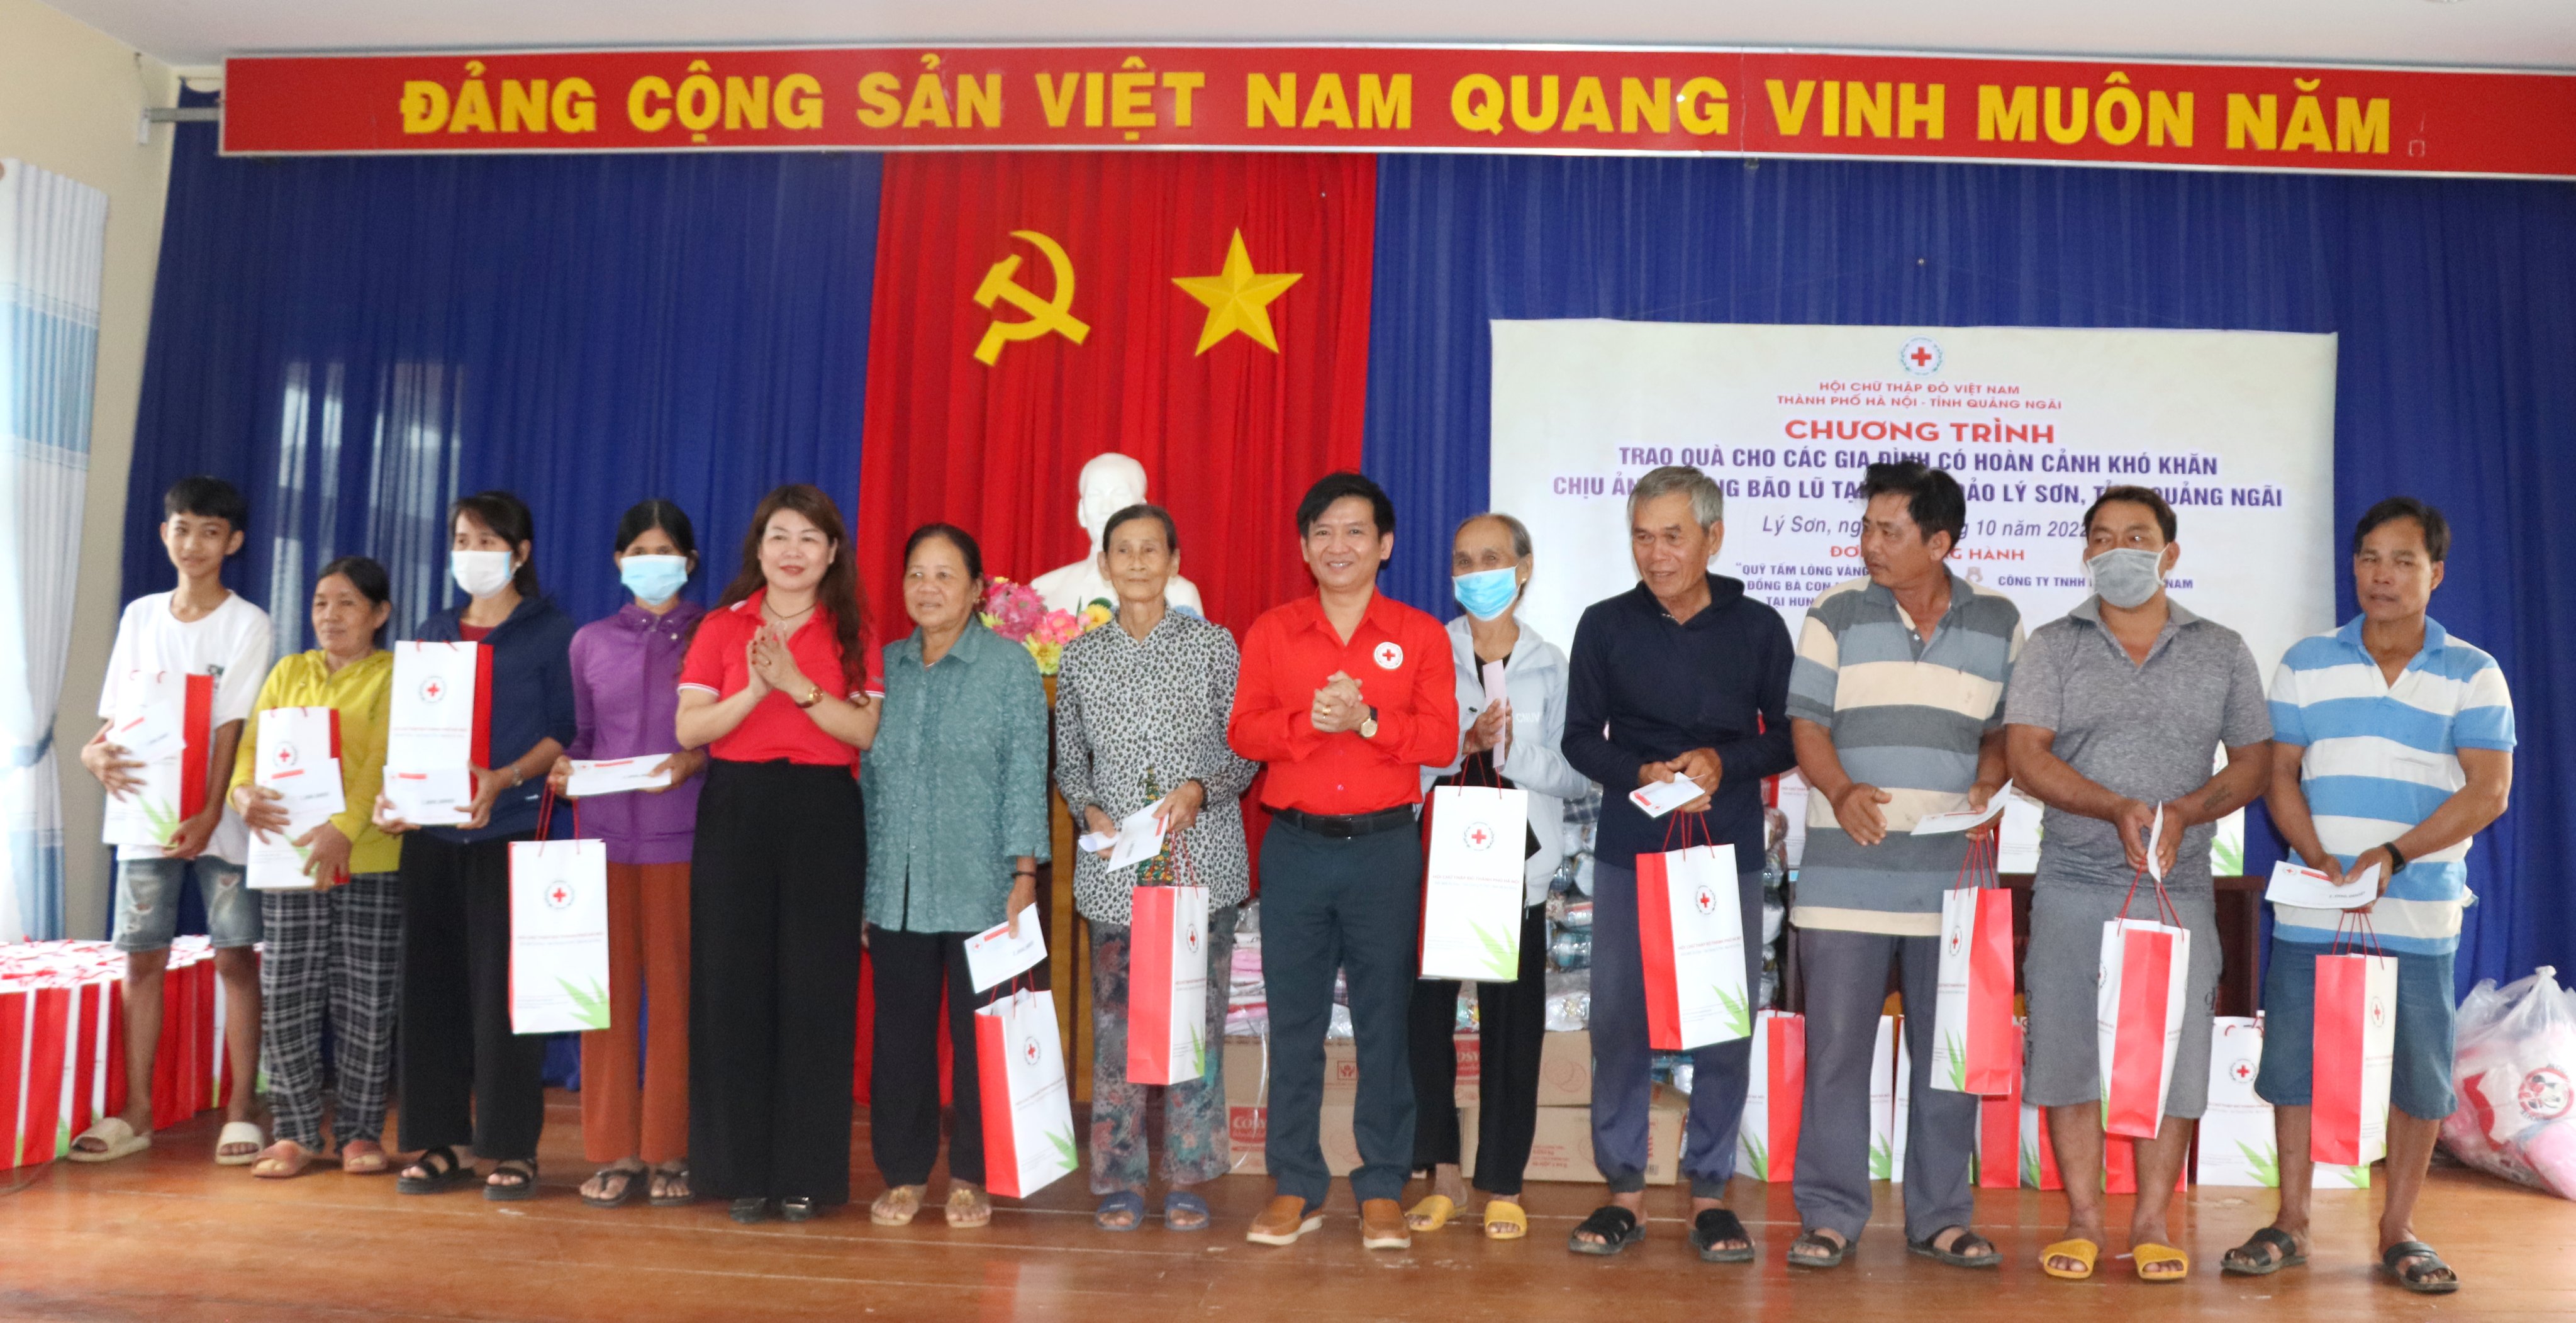 Hội Chữ thập đỏ TP Hà Nội trao 100 suất quà cho người dân Lý Sơn bị thiệt hại do bão số 4